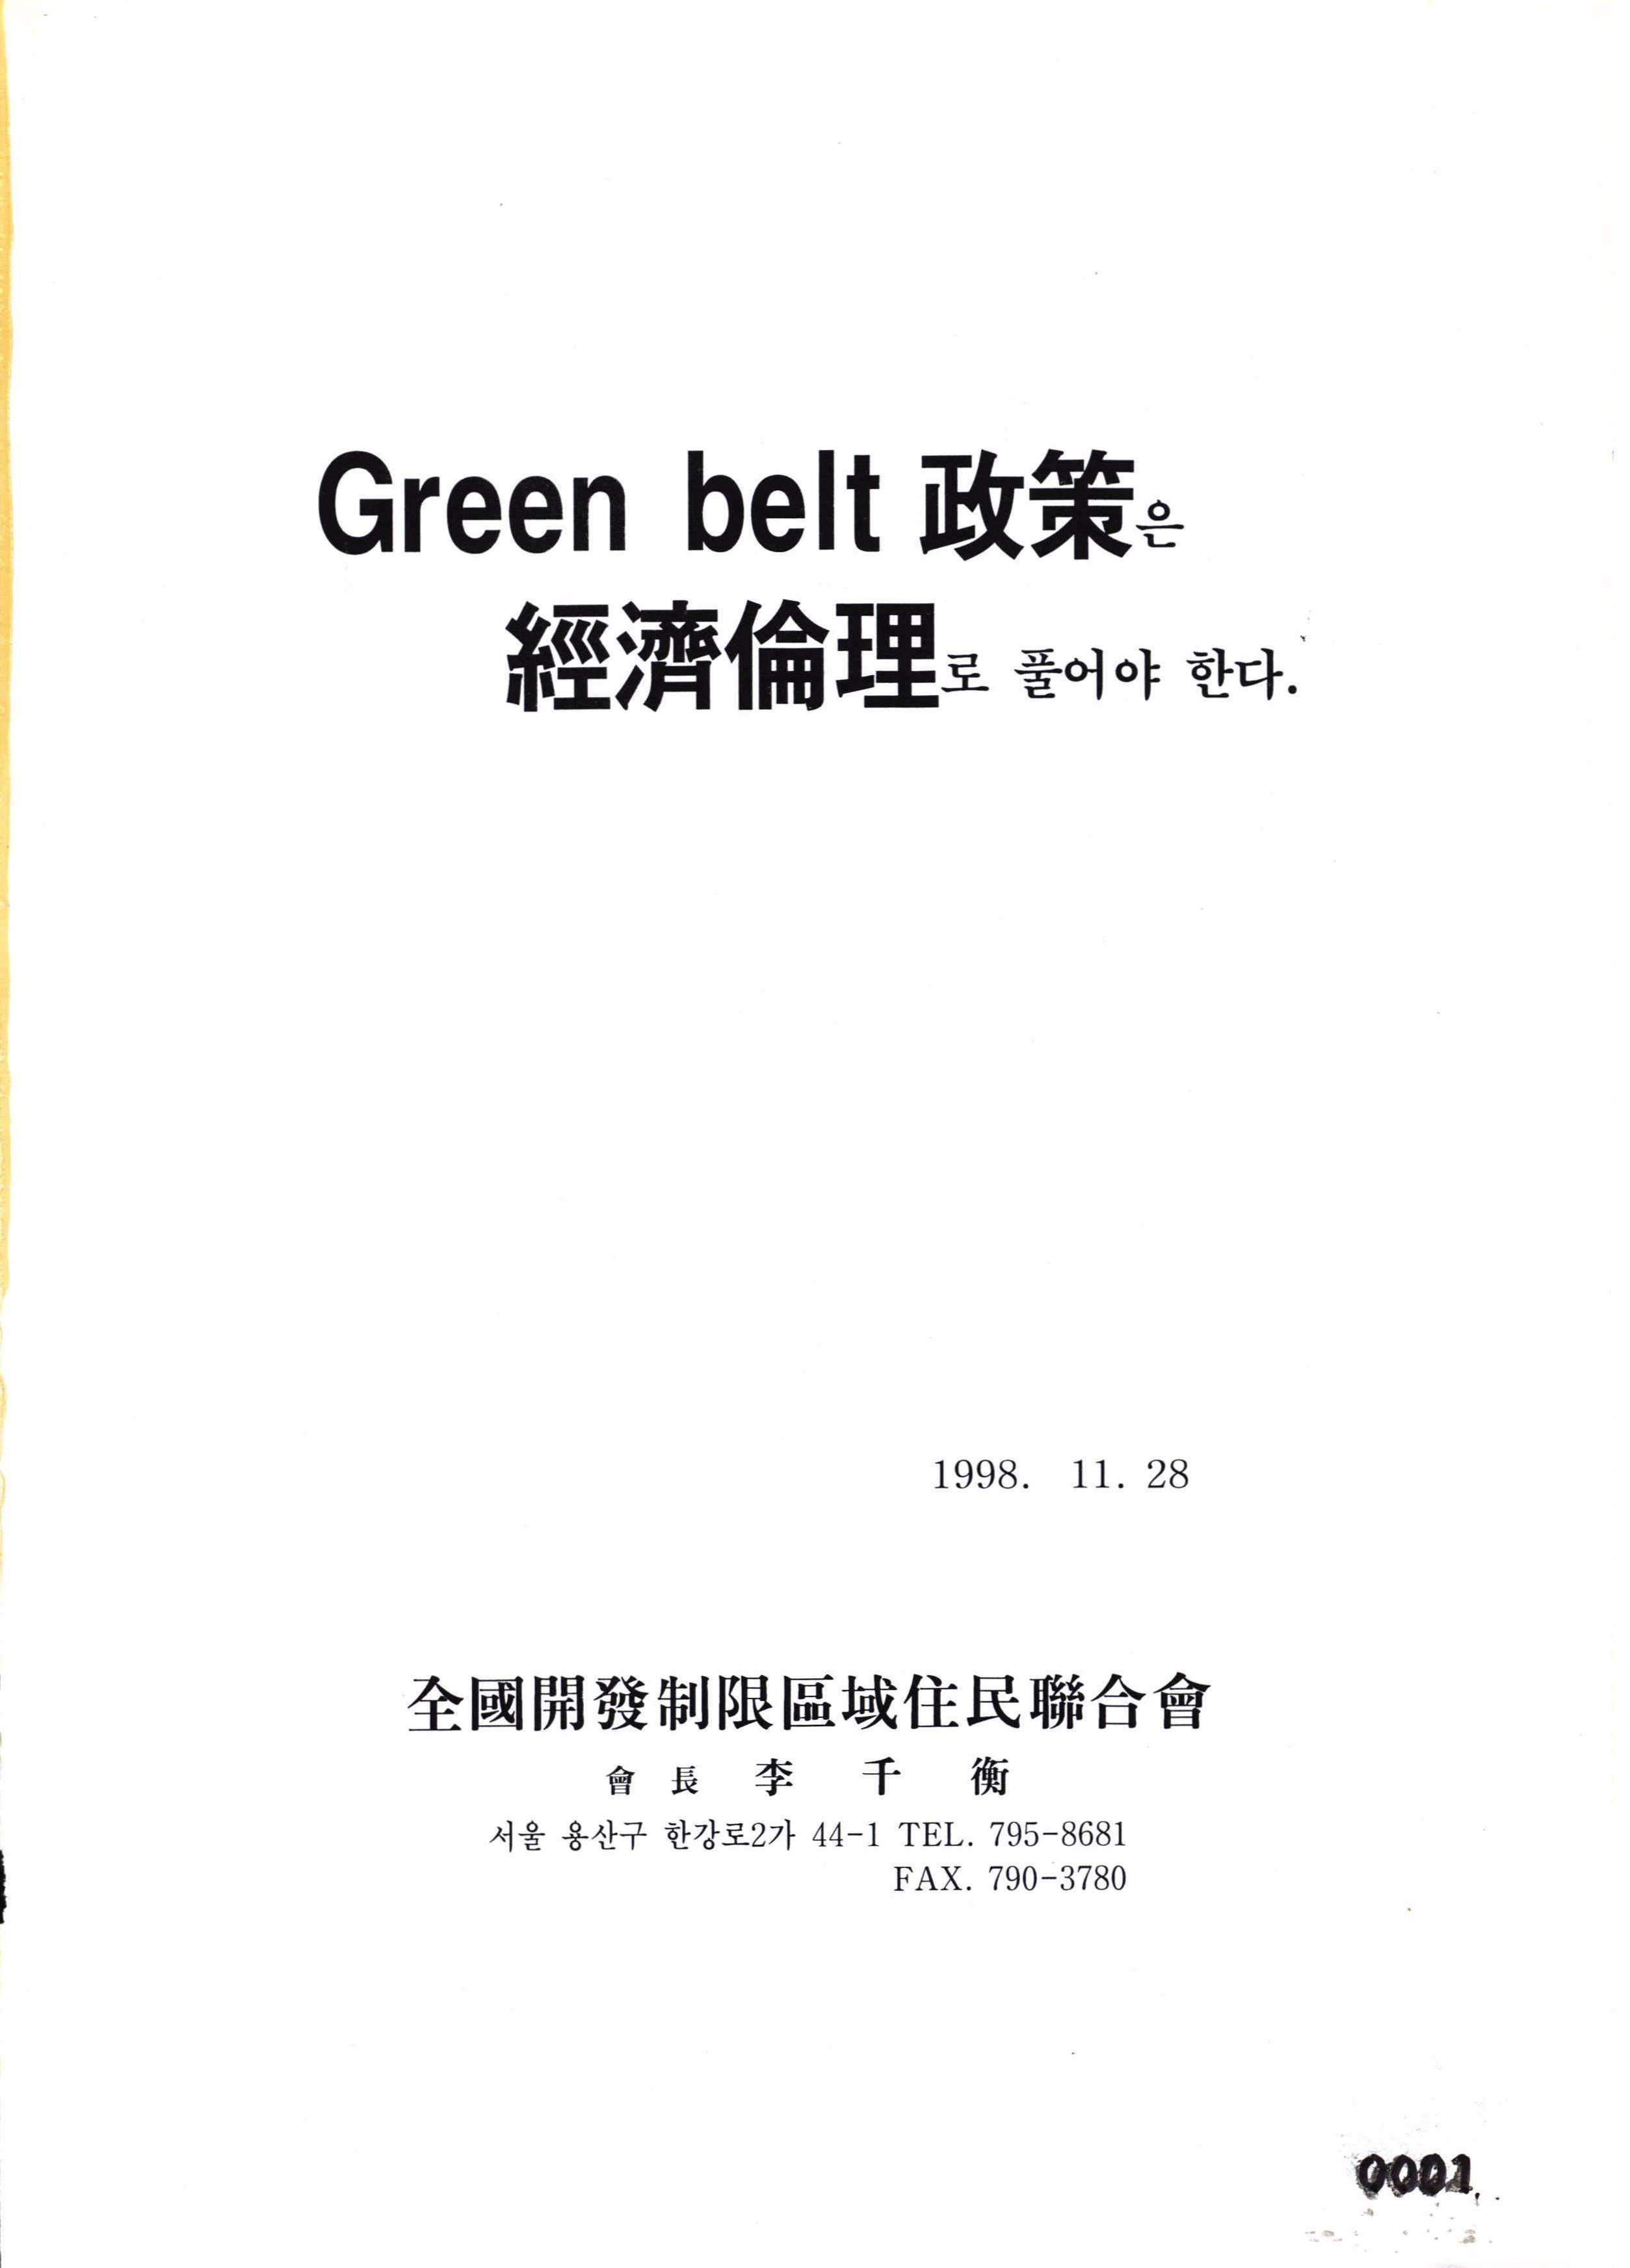 그린벨트정책은경제윤리로풀어야한다(개발제한구역제도갠선안) 표지, 1998년 11월 28일. 서울 용산구 한강로2가 44-1. 